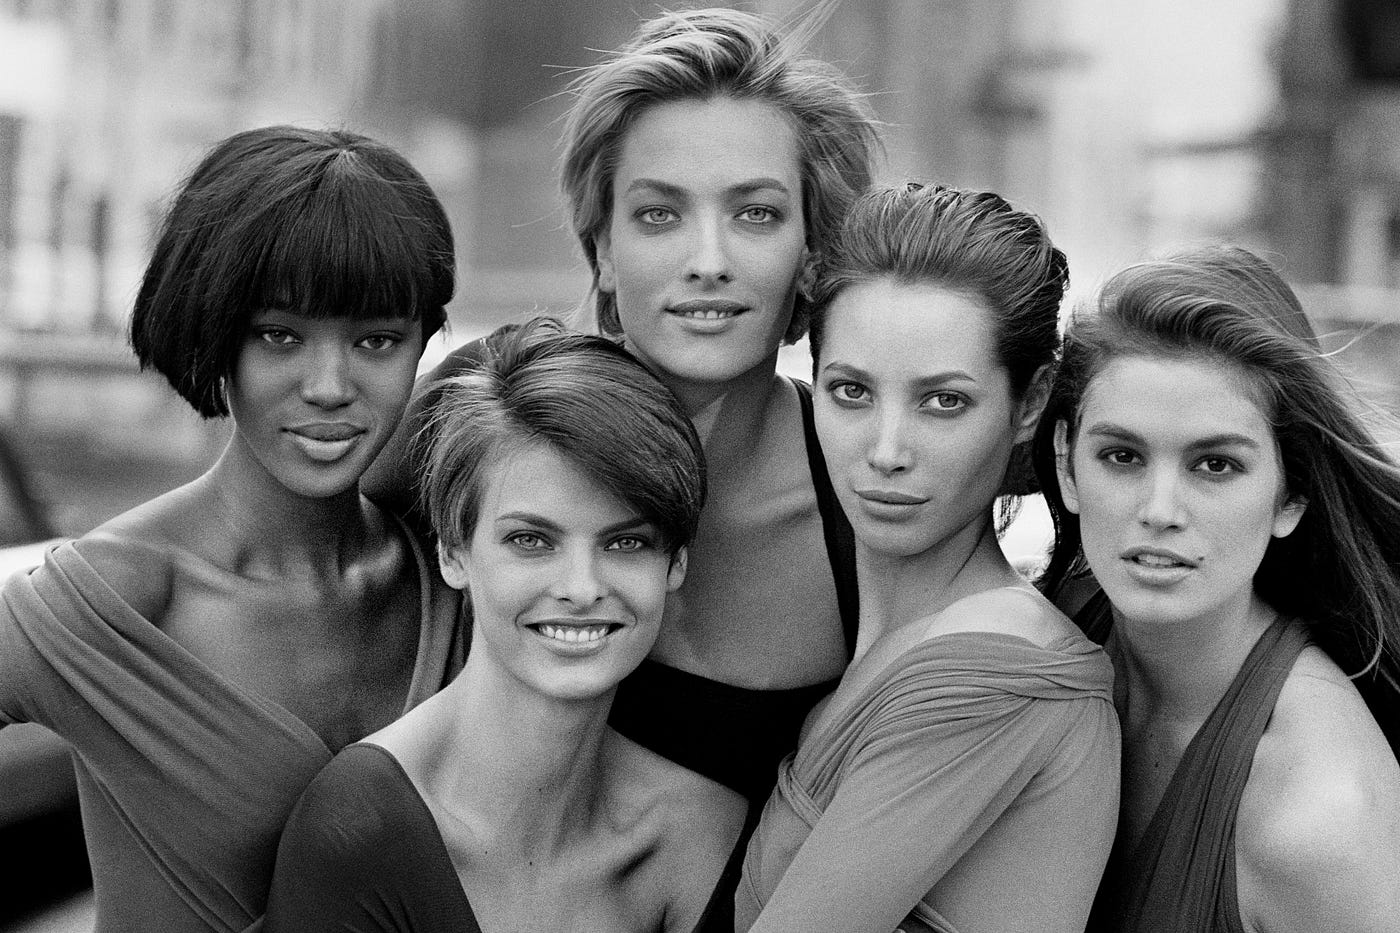 The Supermodel. 90's and 80's supermodel era, It's not…